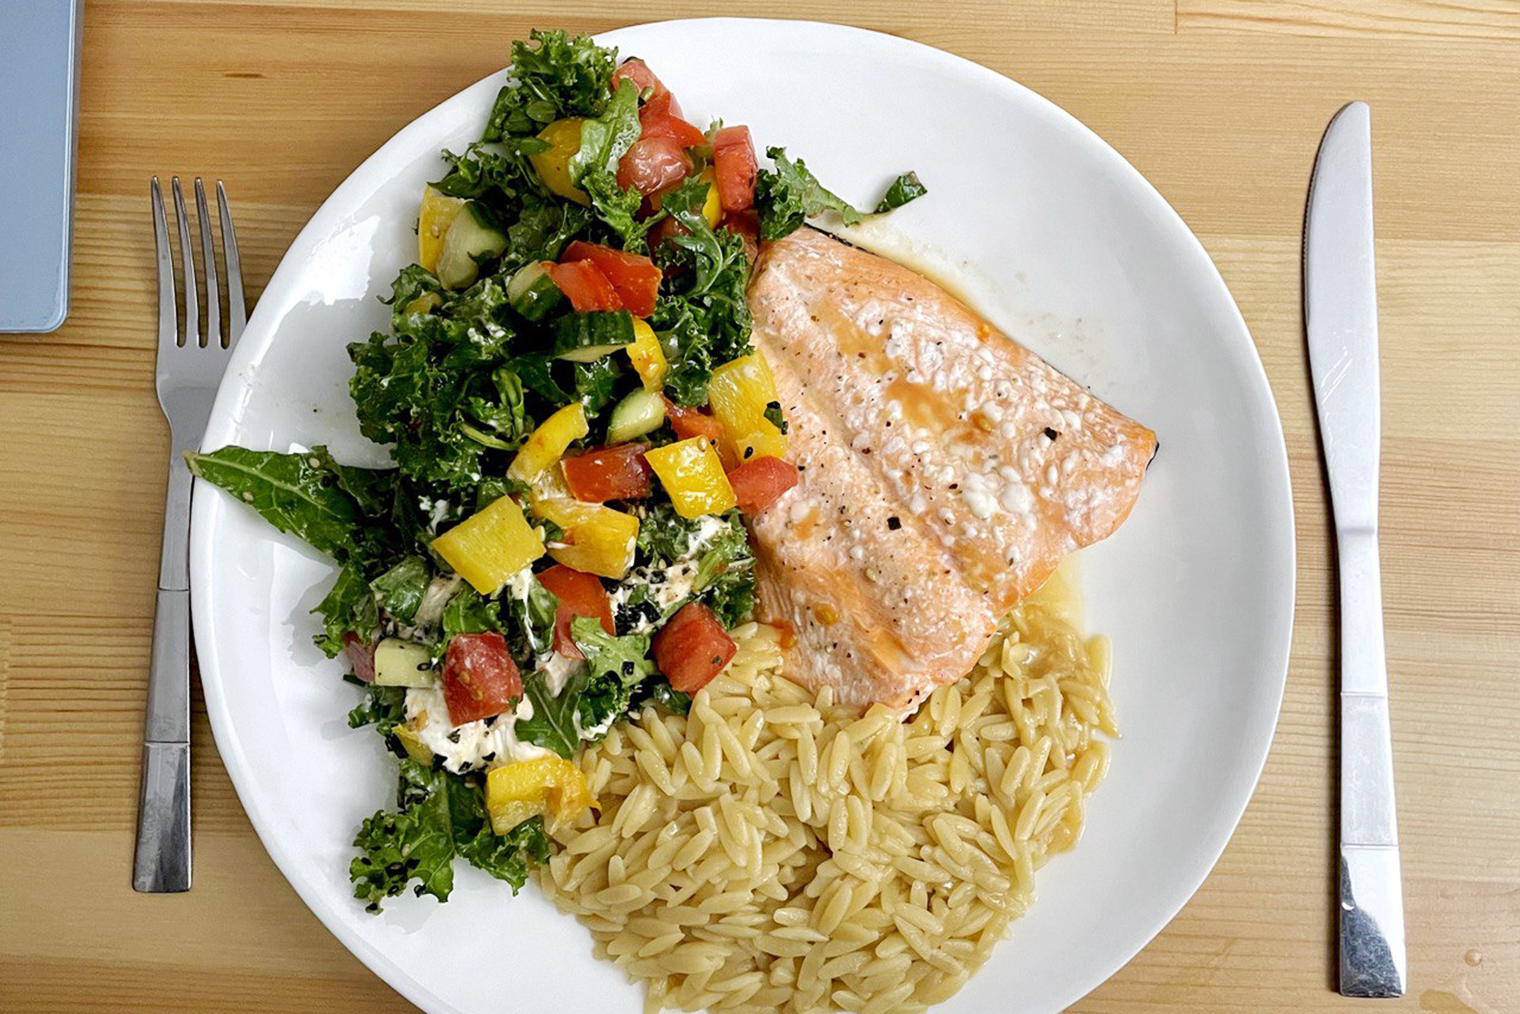 Пример ужина: запеченный лосось, итальянская паста орзо и овощной салат